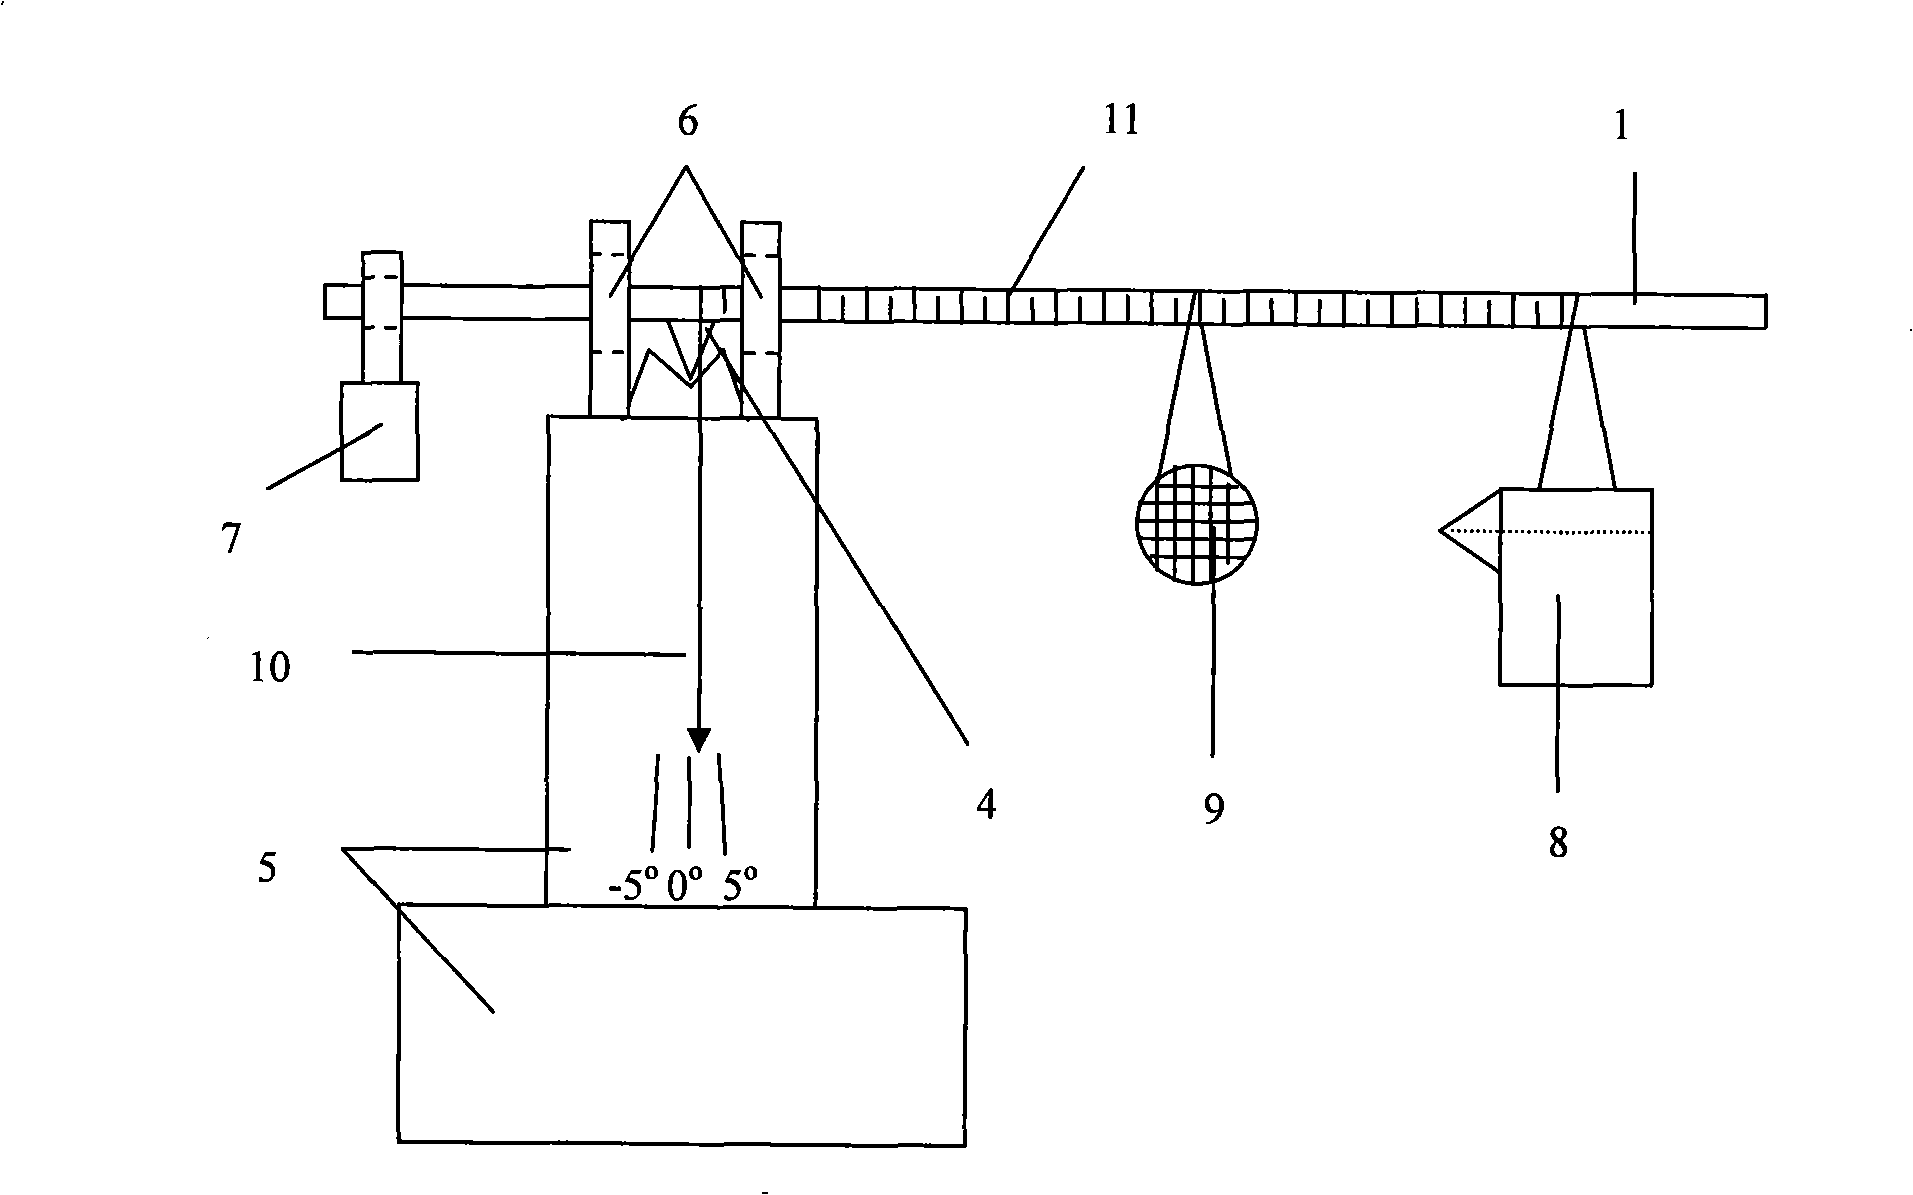 Non-linear scale gravimeter